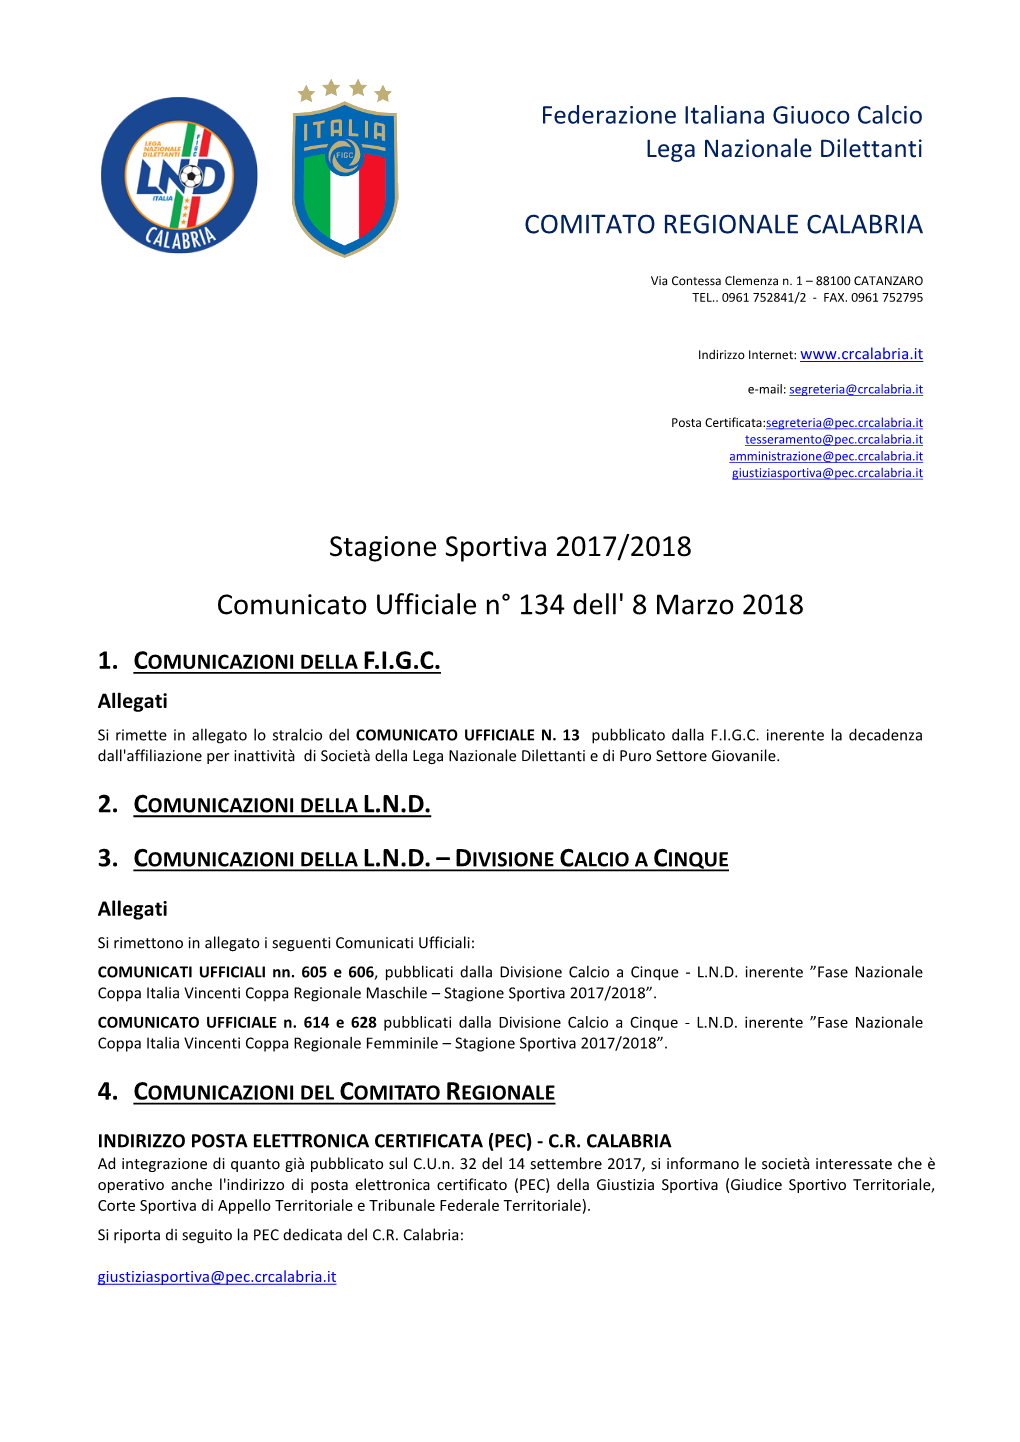 Stagione Sportiva 2017/2018 Comunicato Ufficiale N° 134 Dell' 8 Marzo 2018